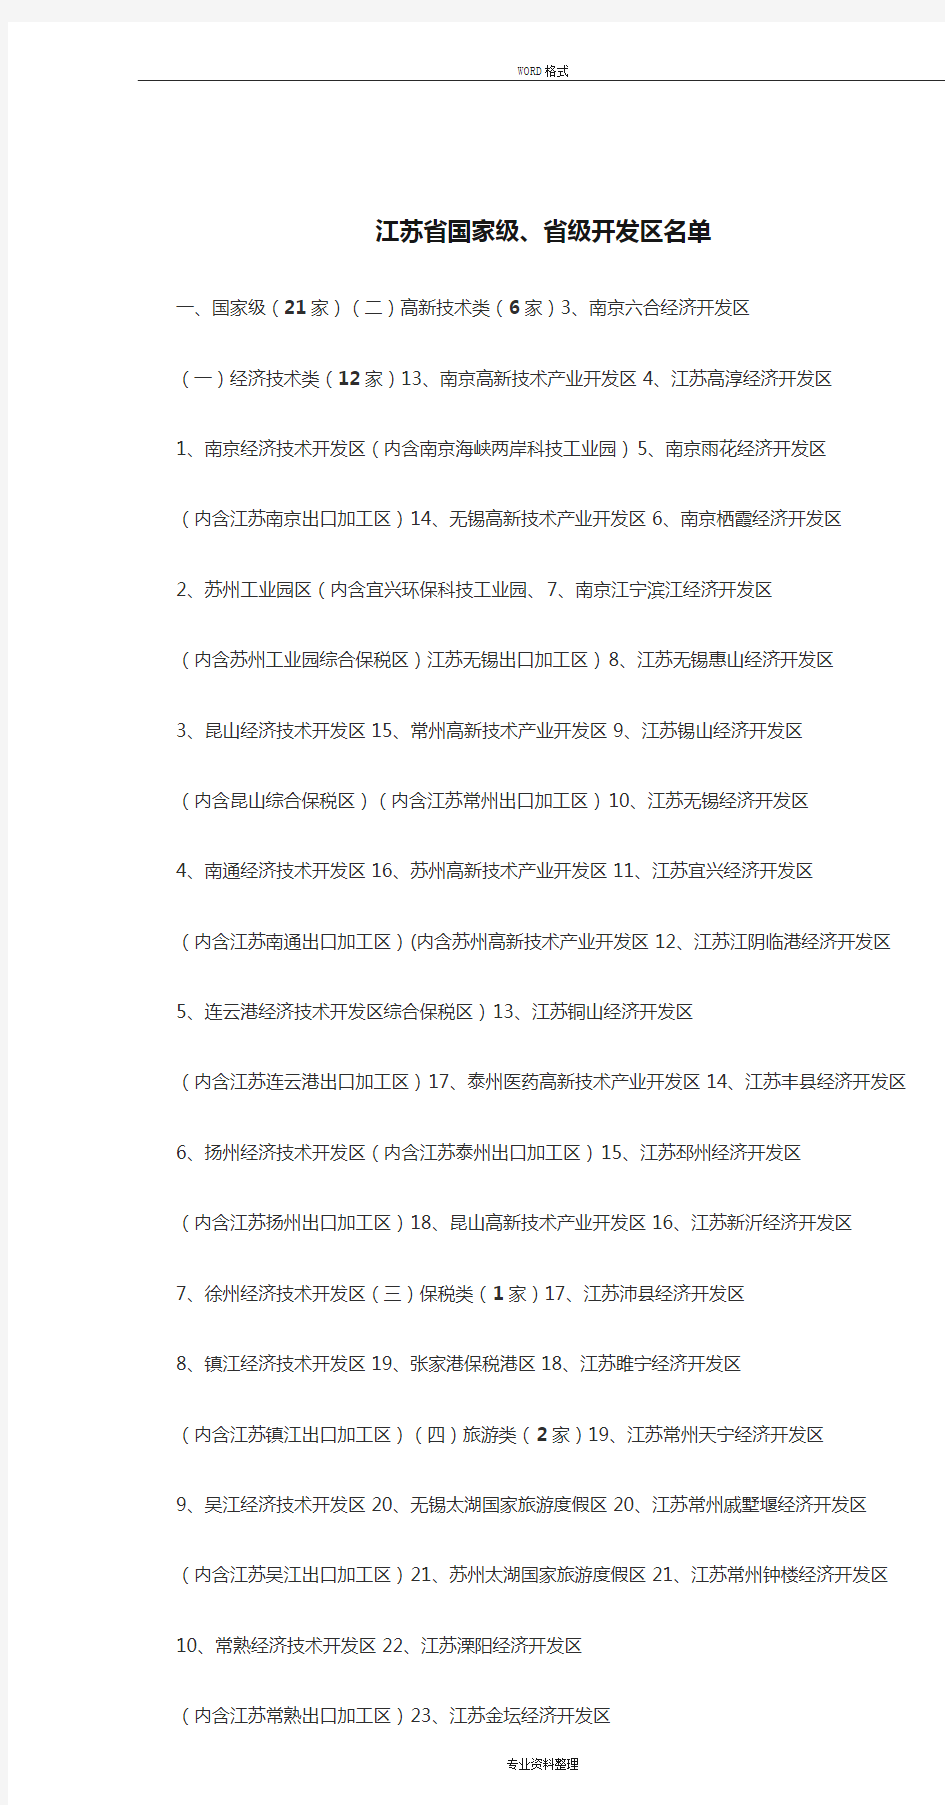 江苏省国家级、省级开发区名单